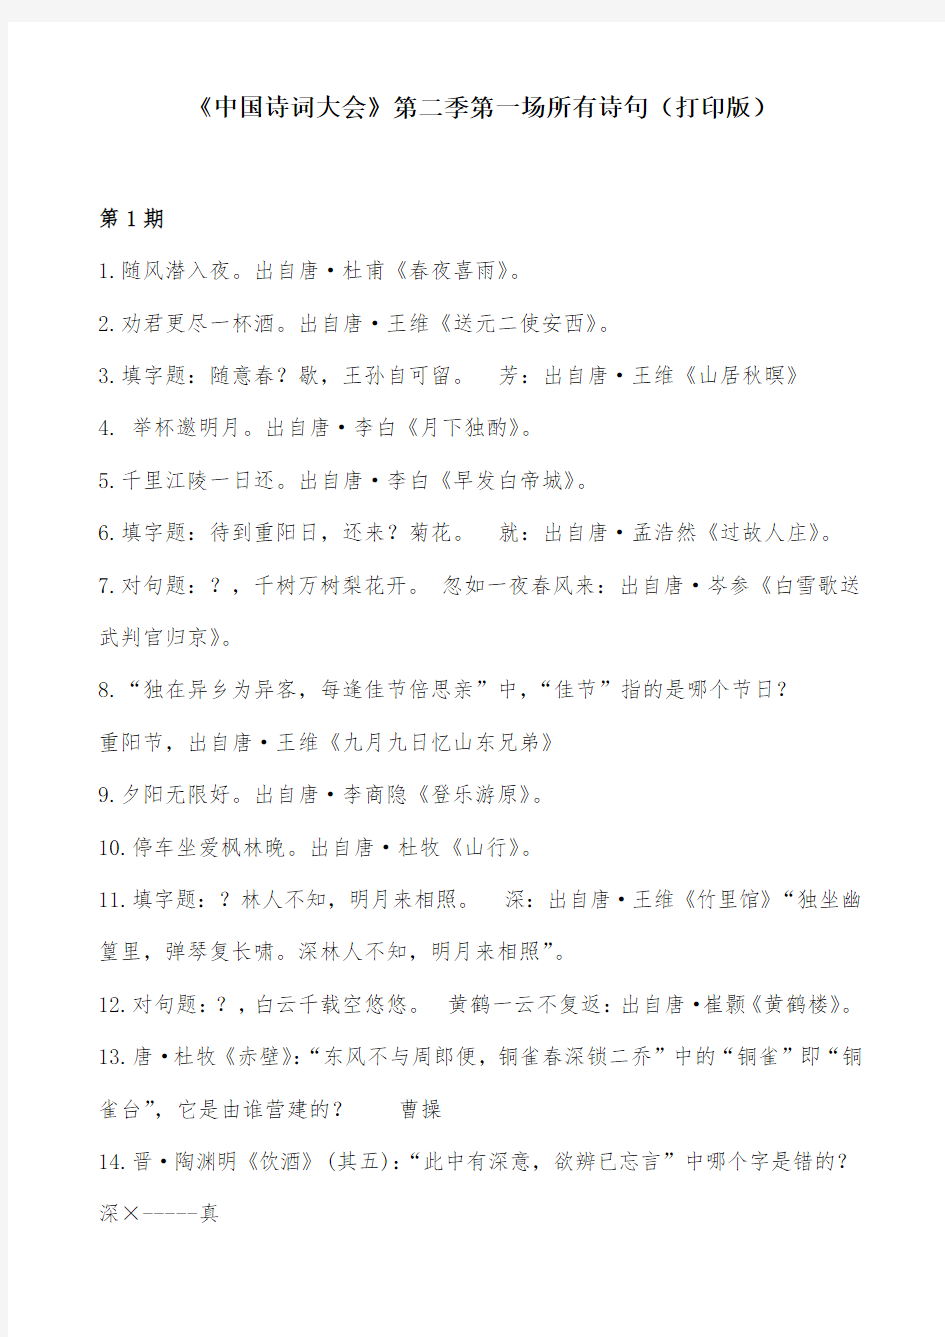 中国诗词大会第二季题库打印版(第1期所有诗句)